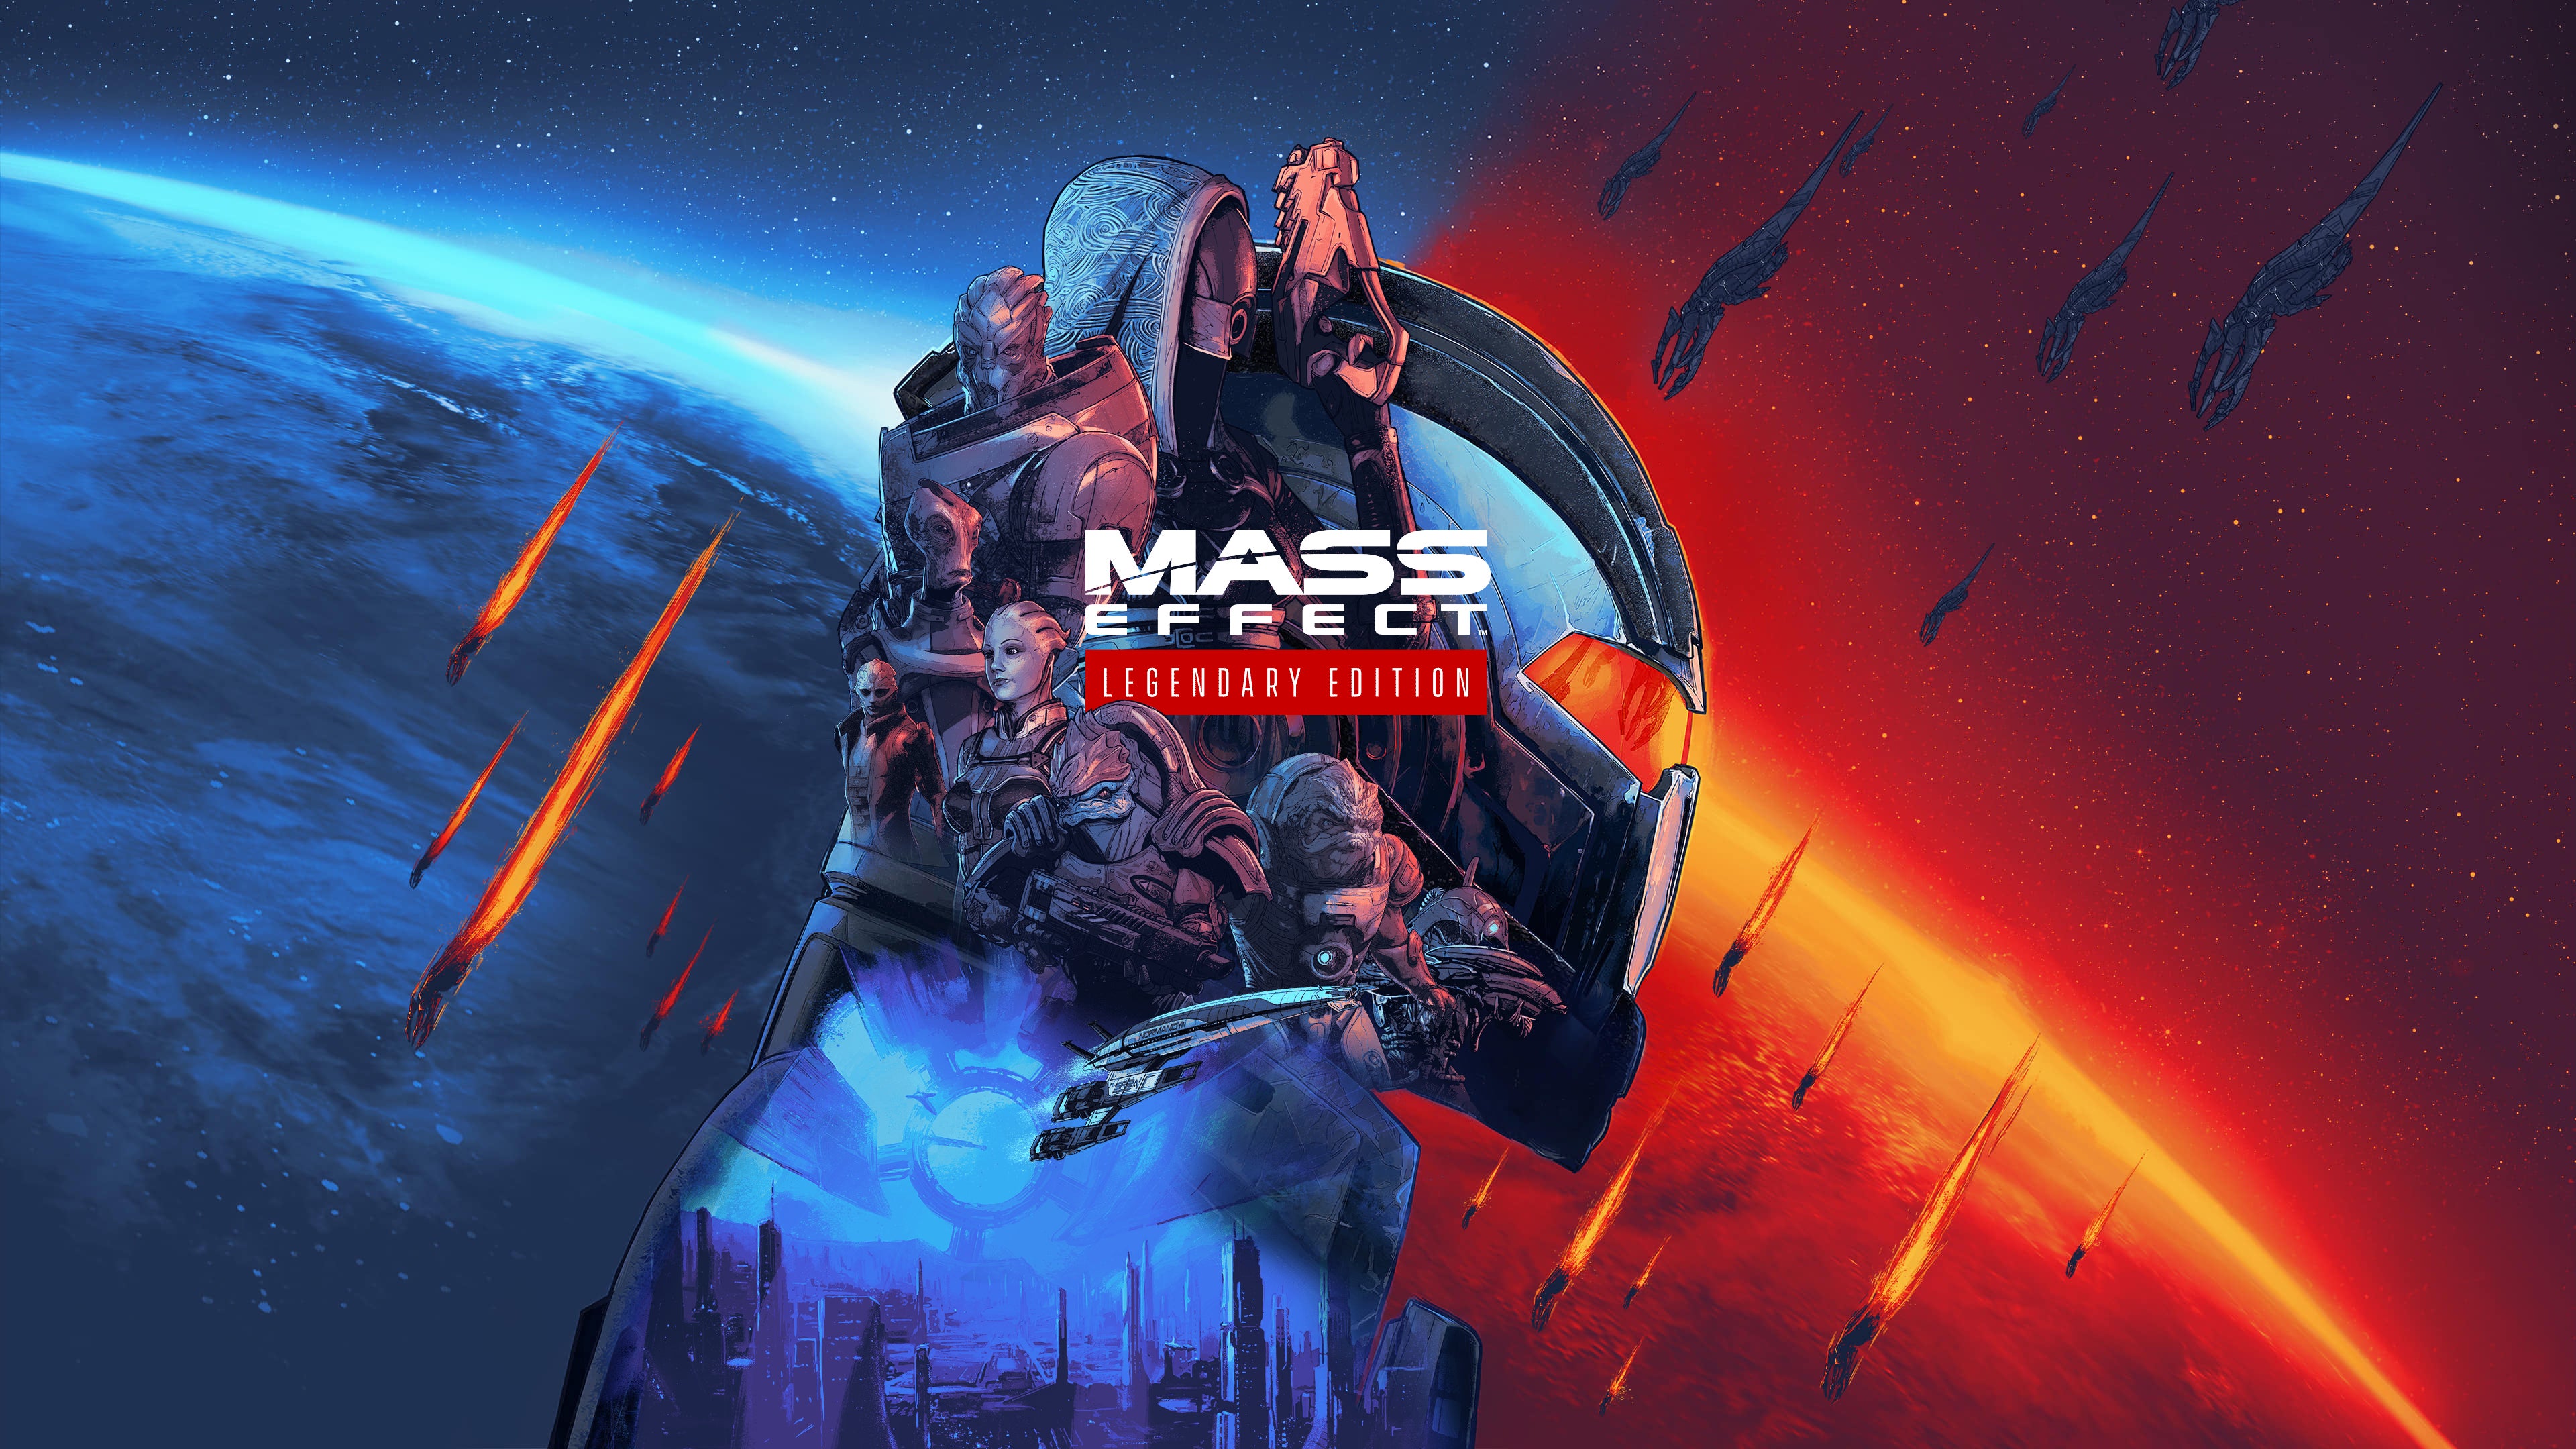 Mass-Effect-art-1.jpg